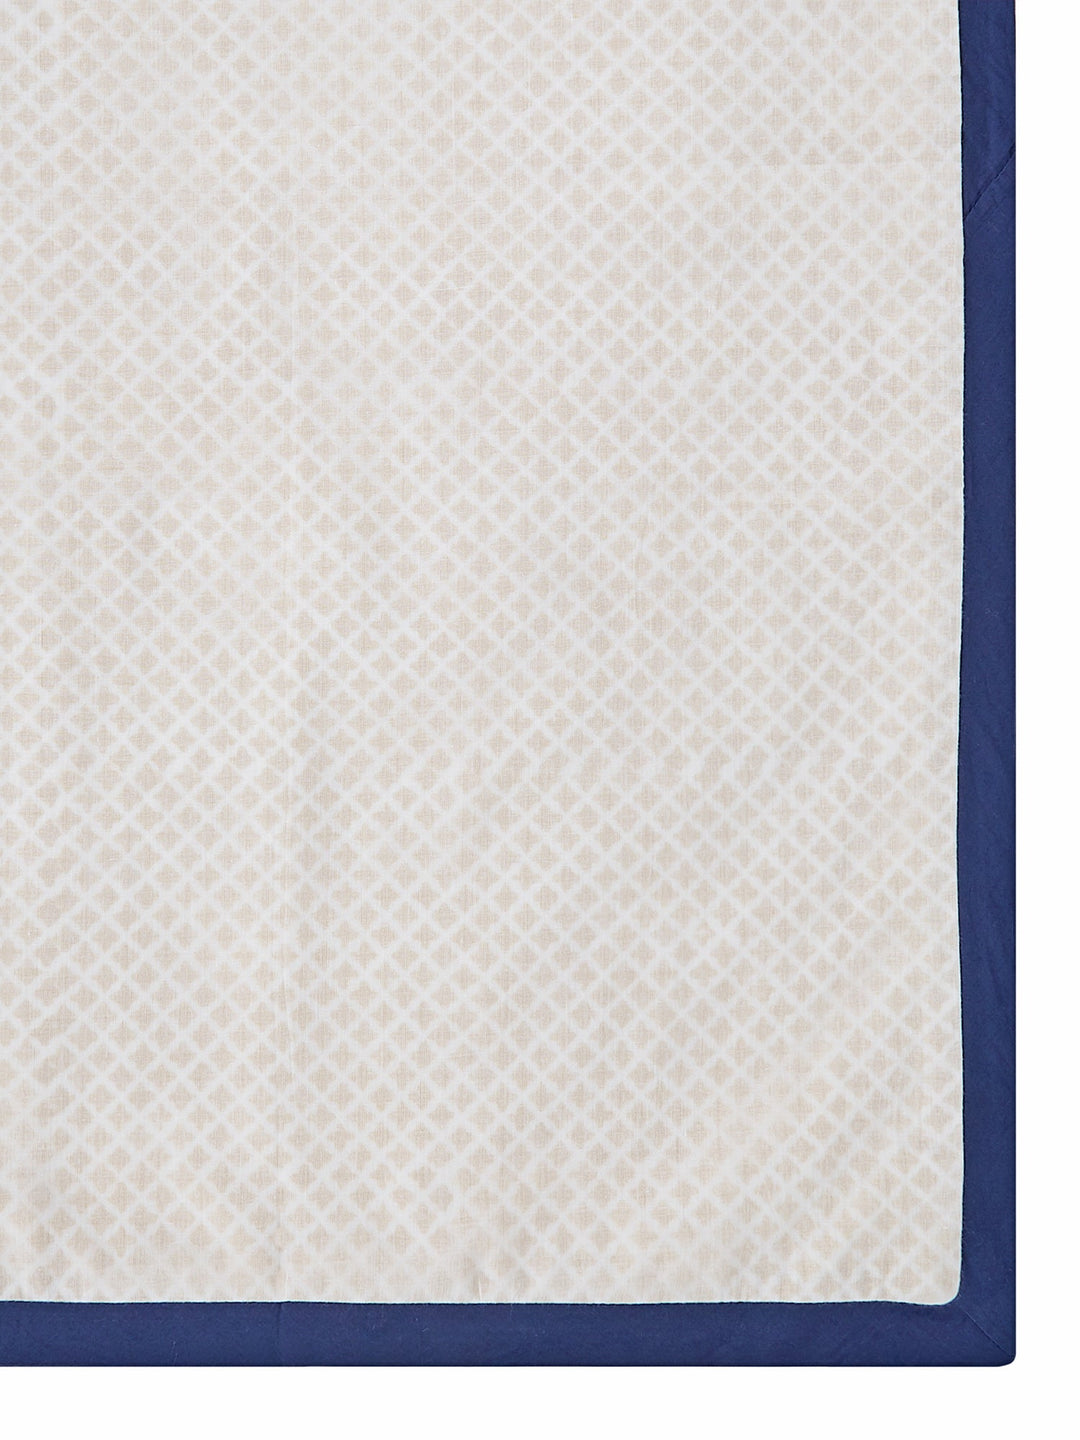 Cotton Dohar Baby Blanket - Seminyak Blue